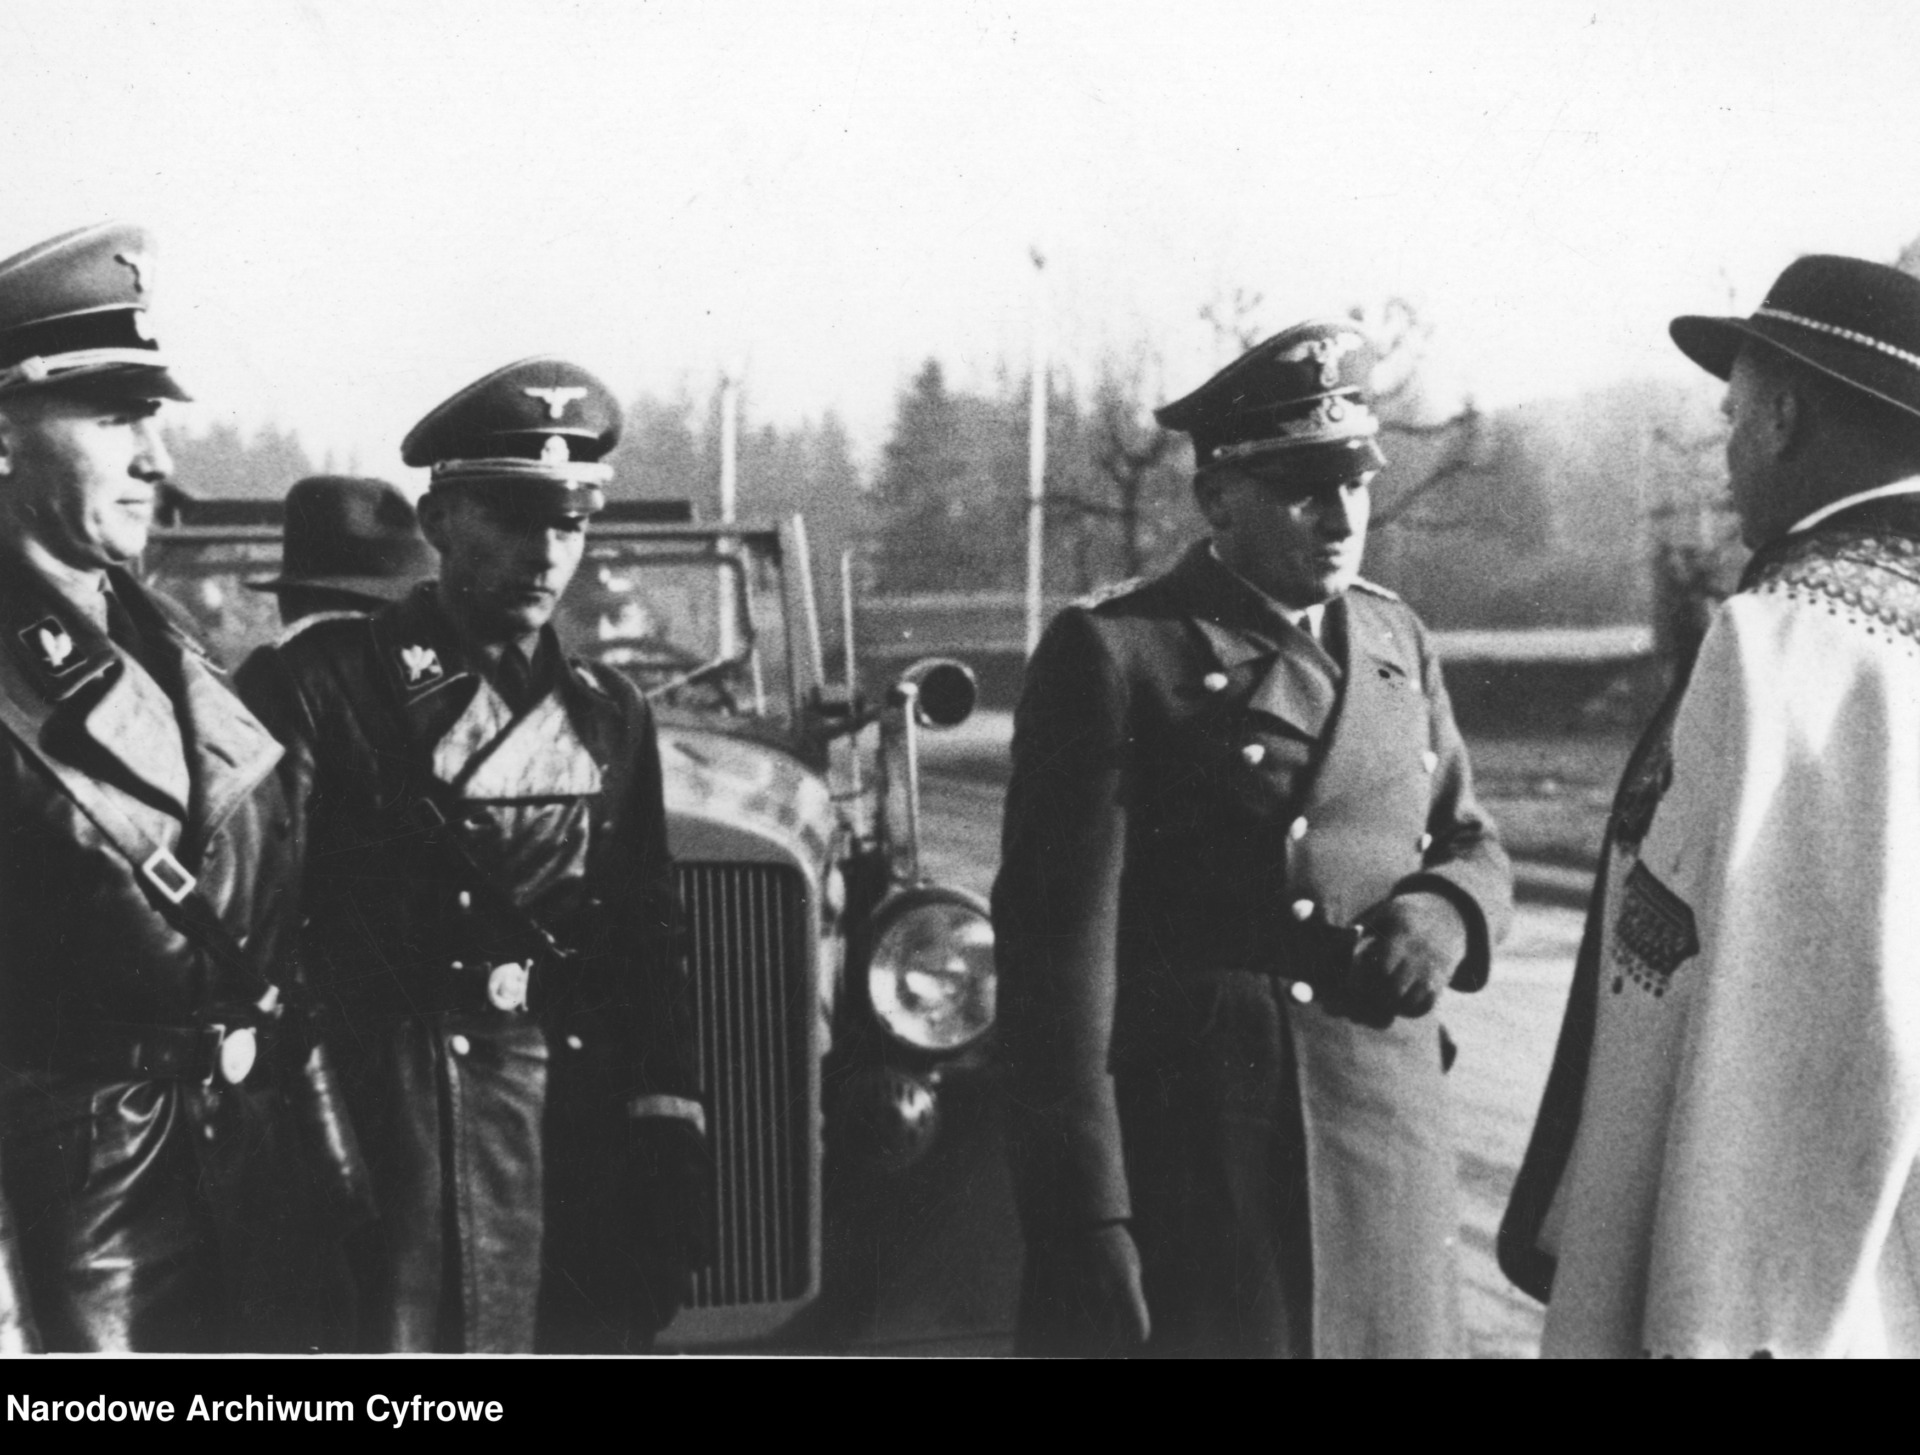 Przewodniczący Komitetu Góralskiego Wacław Krzeptowski (w stroju góralskim) wita gubernatora Hansa Franka. Obok widoczny Otto von Wachter (pierwszy z lewej).